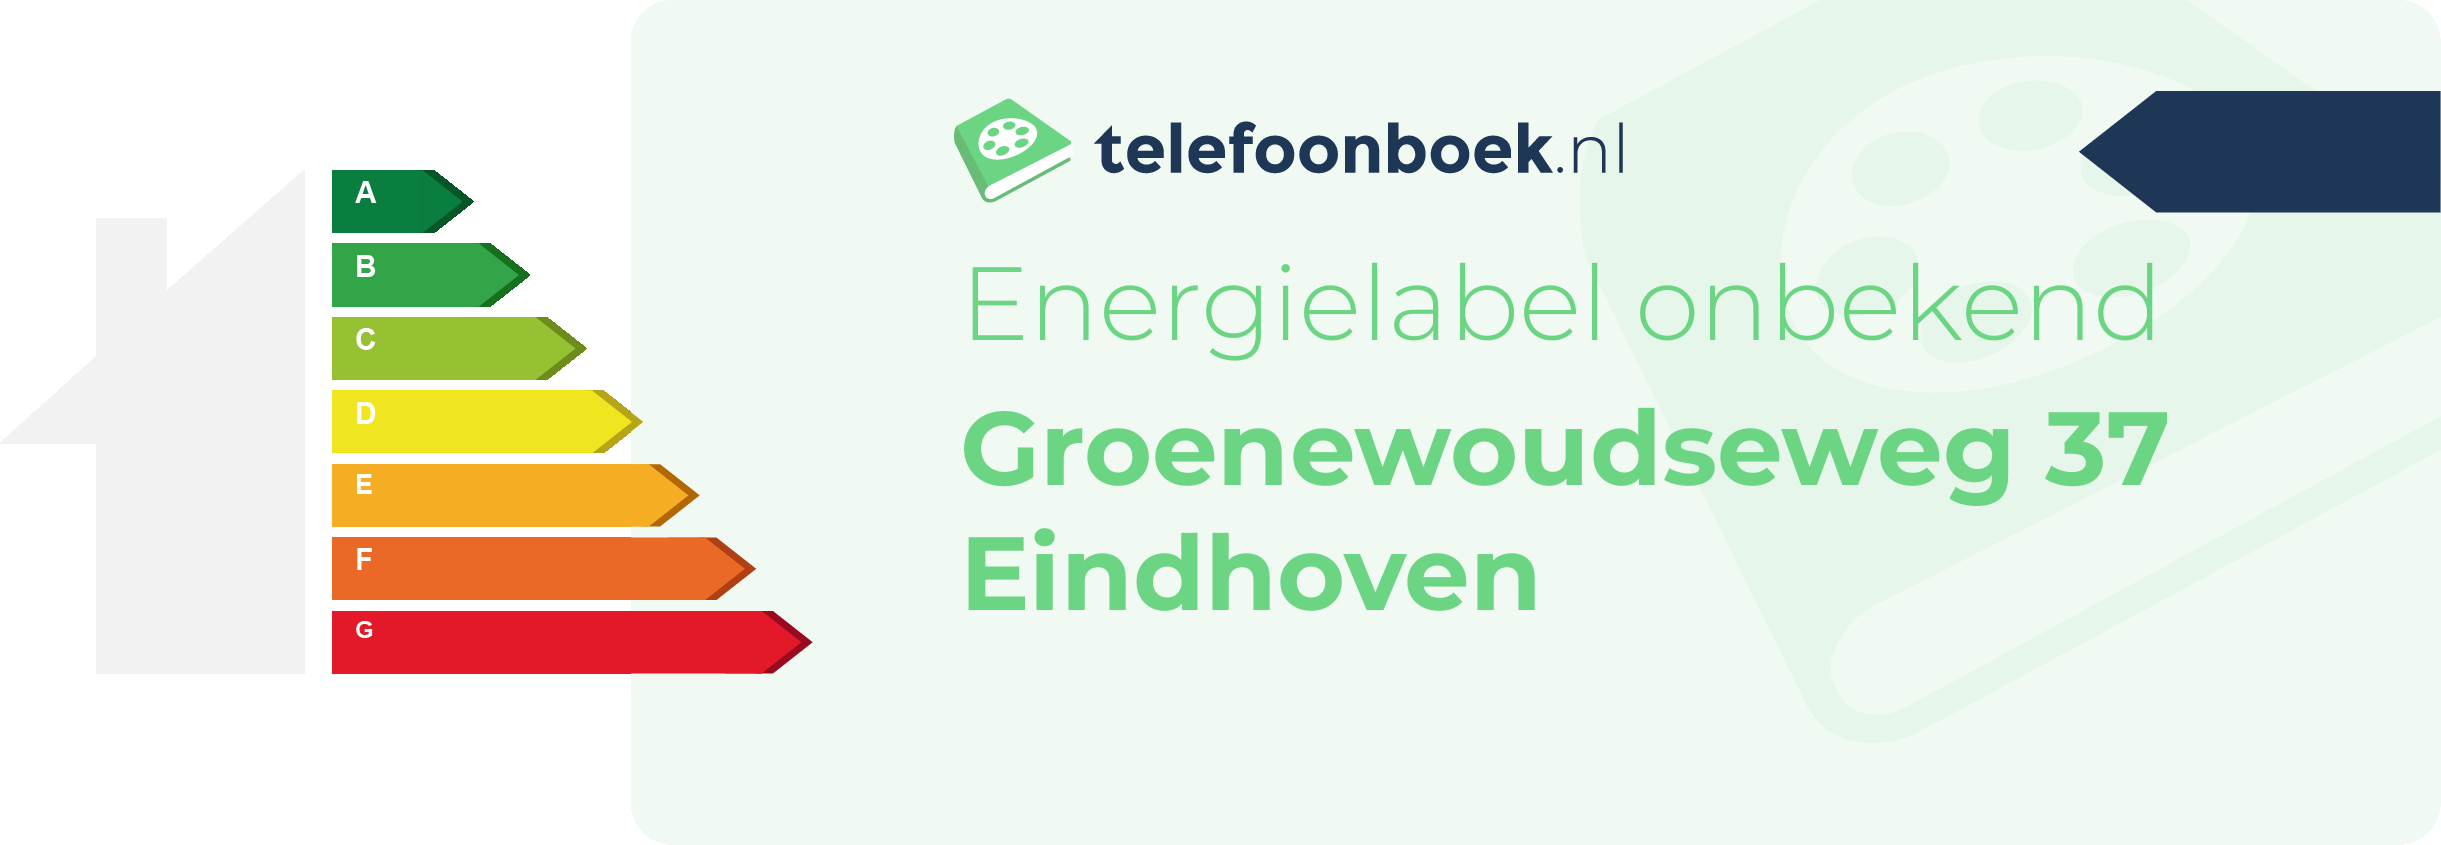 Energielabel Groenewoudseweg 37 Eindhoven